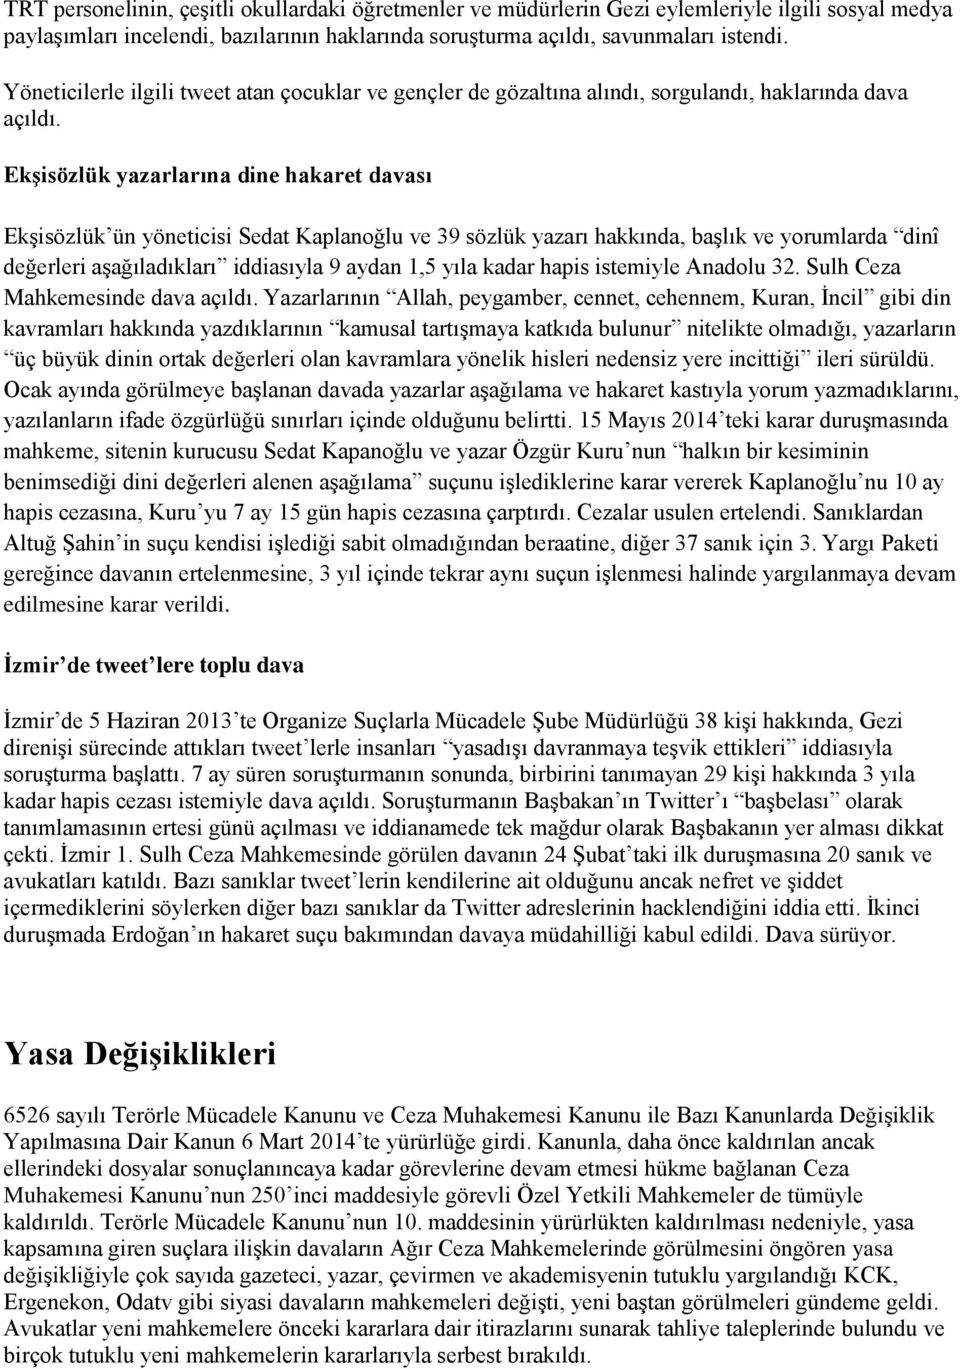 Ekşisözlük yazarlarına dine hakaret davası EkĢisözlük ün yöneticisi Sedat Kaplanoğlu ve 39 sözlük yazarı hakkında, baģlık ve yorumlarda dinî değerleri aģağıladıkları iddiasıyla 9 aydan 1,5 yıla kadar